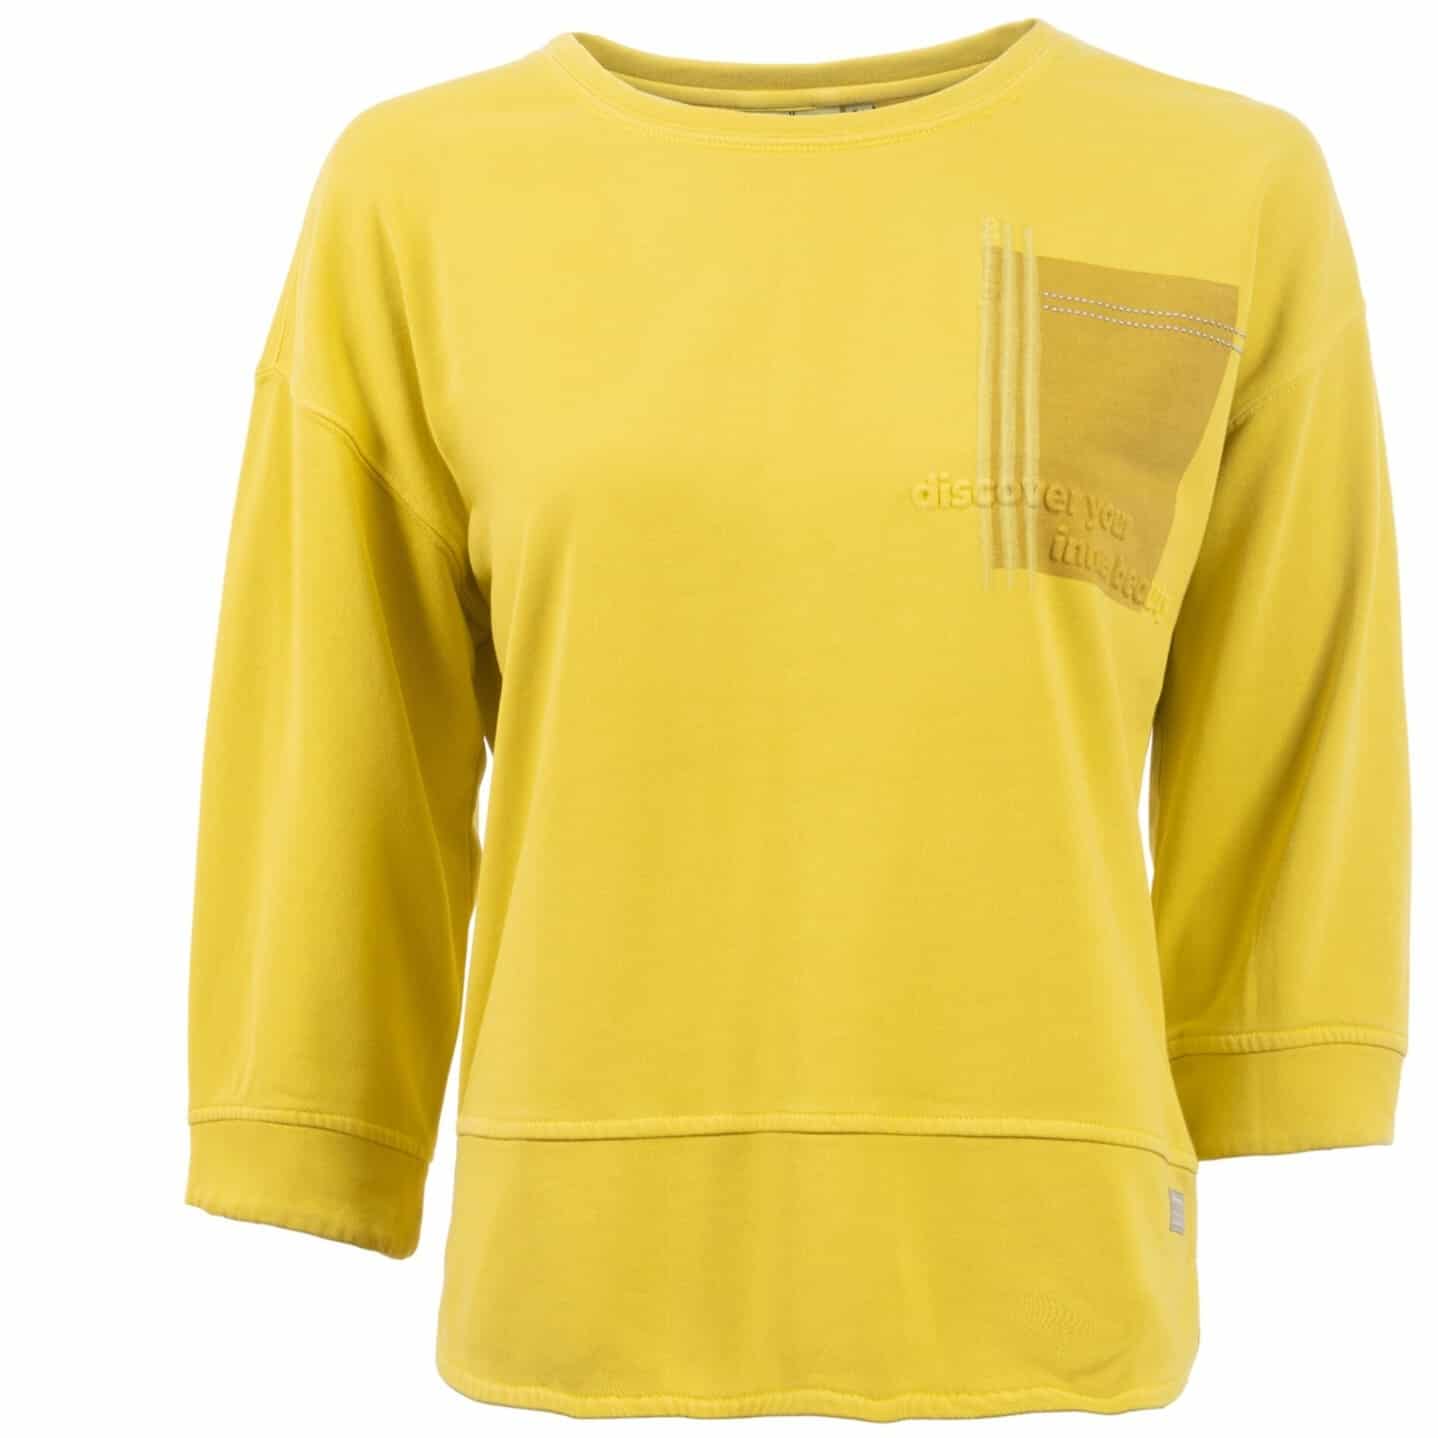 Leichtsweatshirt mit 3/4 Arm in der Farbe Curry von s'questo bei Mode Sabine Lemke in Winnenden im Remstal